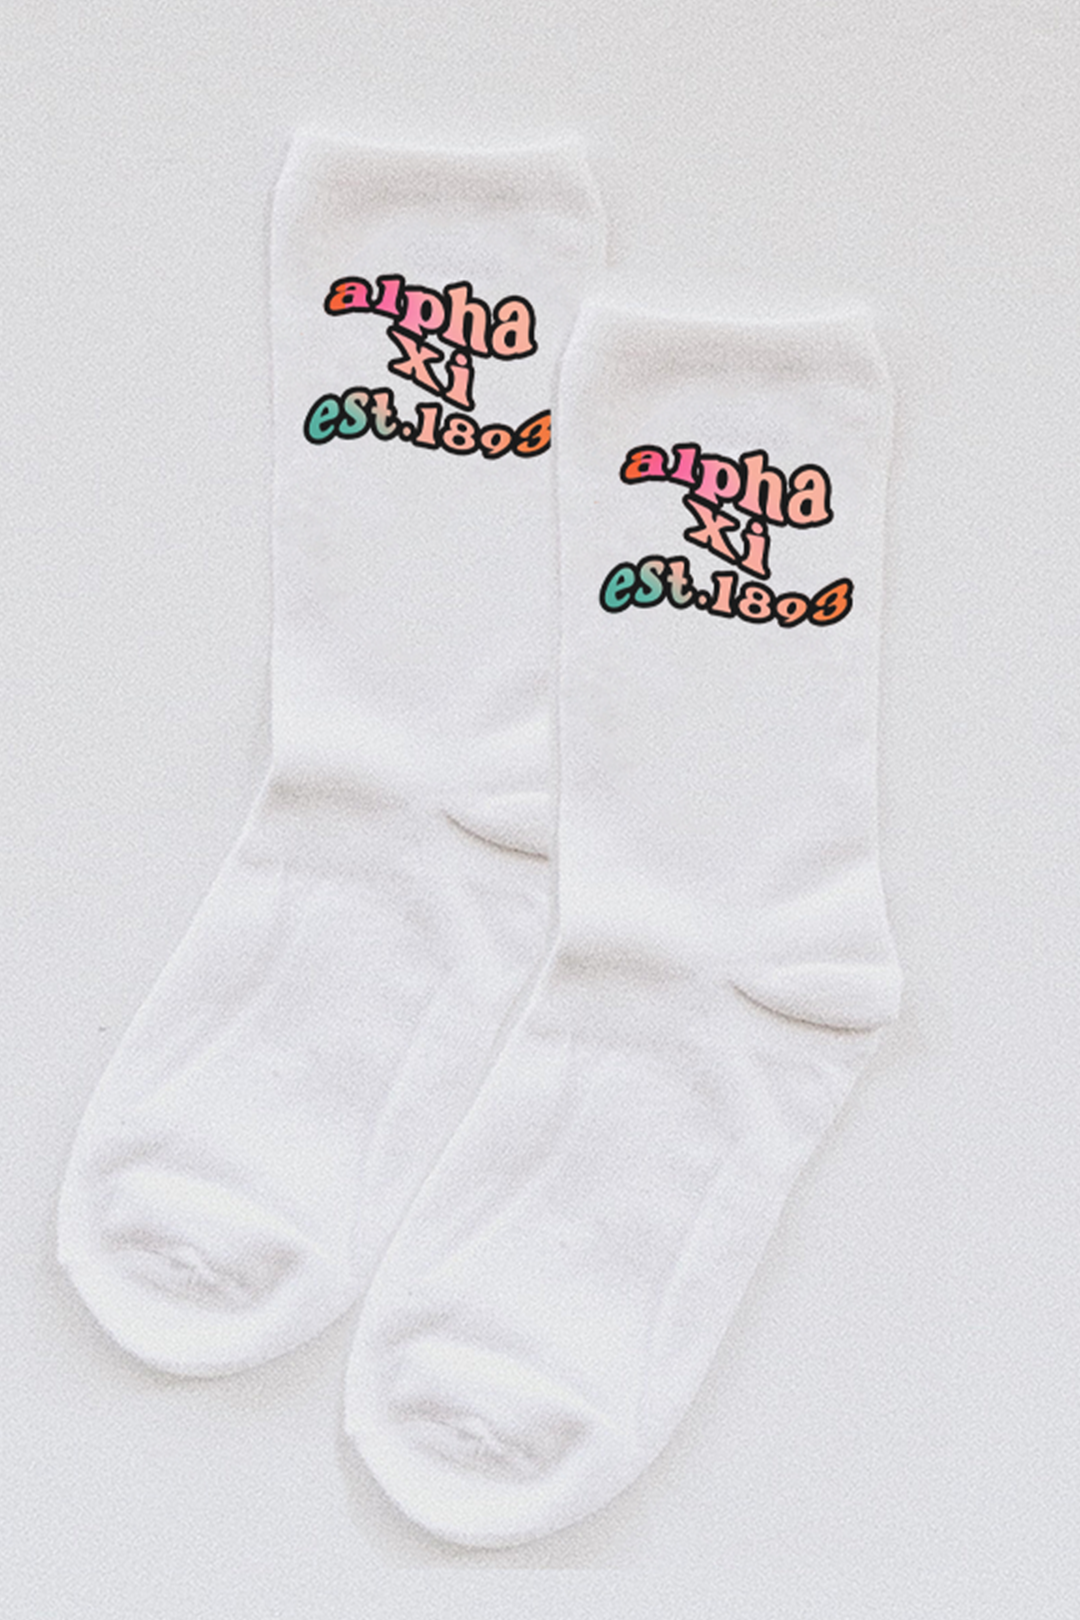 Gradient socks - Alpha Xi